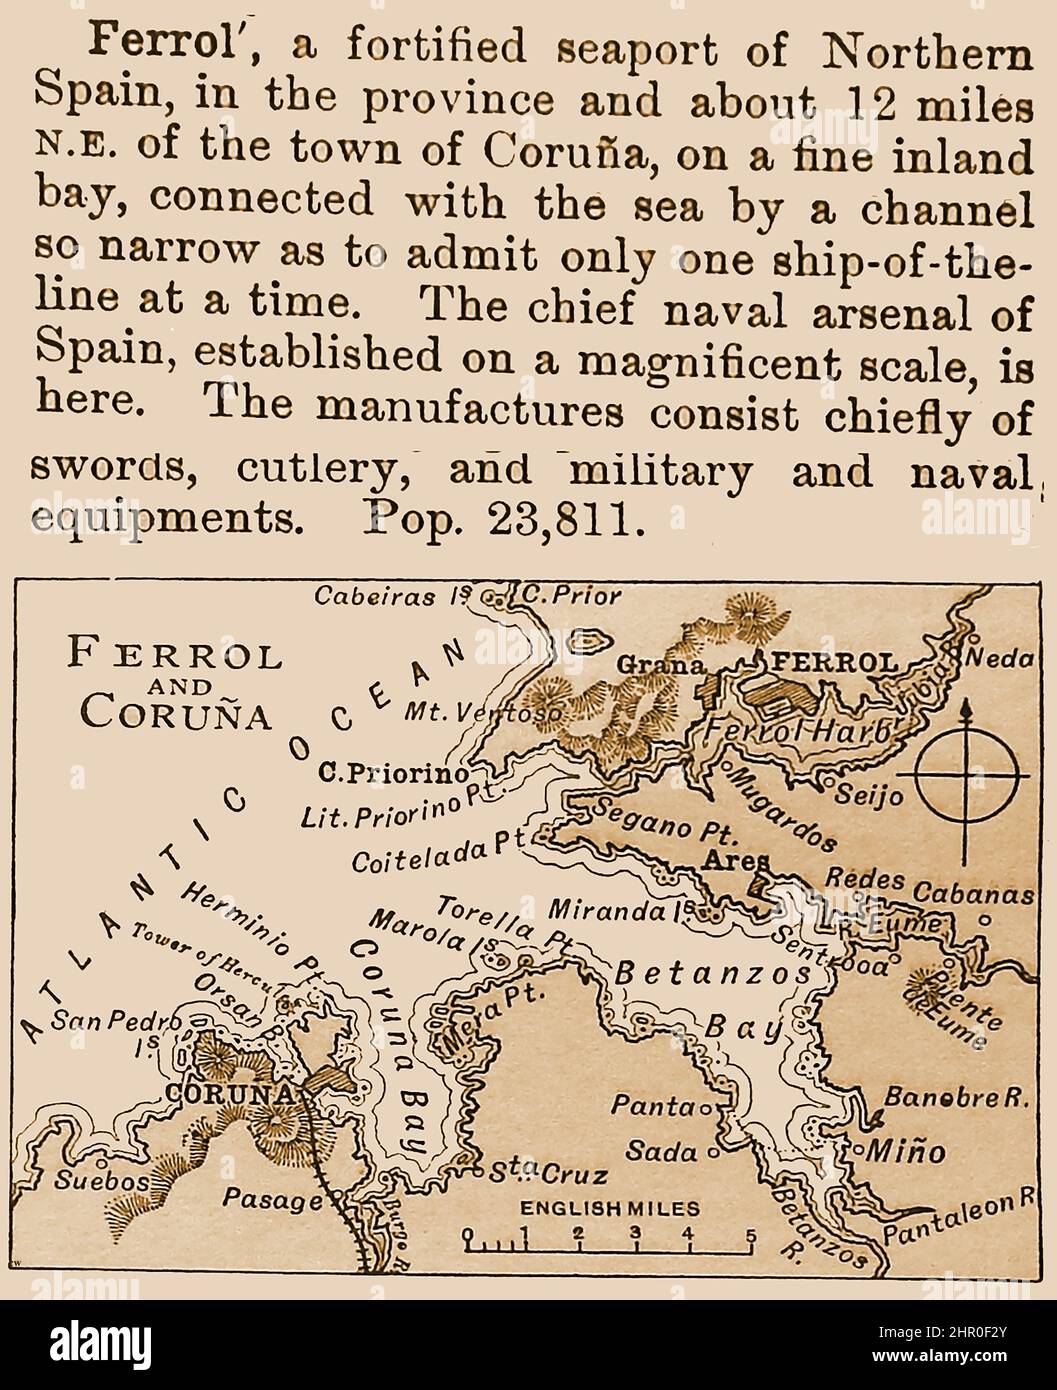 Ein 1896 Gazetteer Eintrag für Ferrol und Coruna , Spanien mit Karte und Beschreibung der Hafeneinfahrt, Marine-Arsenal, und Industrien (Schwerter, Besteck. Militär-und Marine-Ausrüstung) Stockfoto